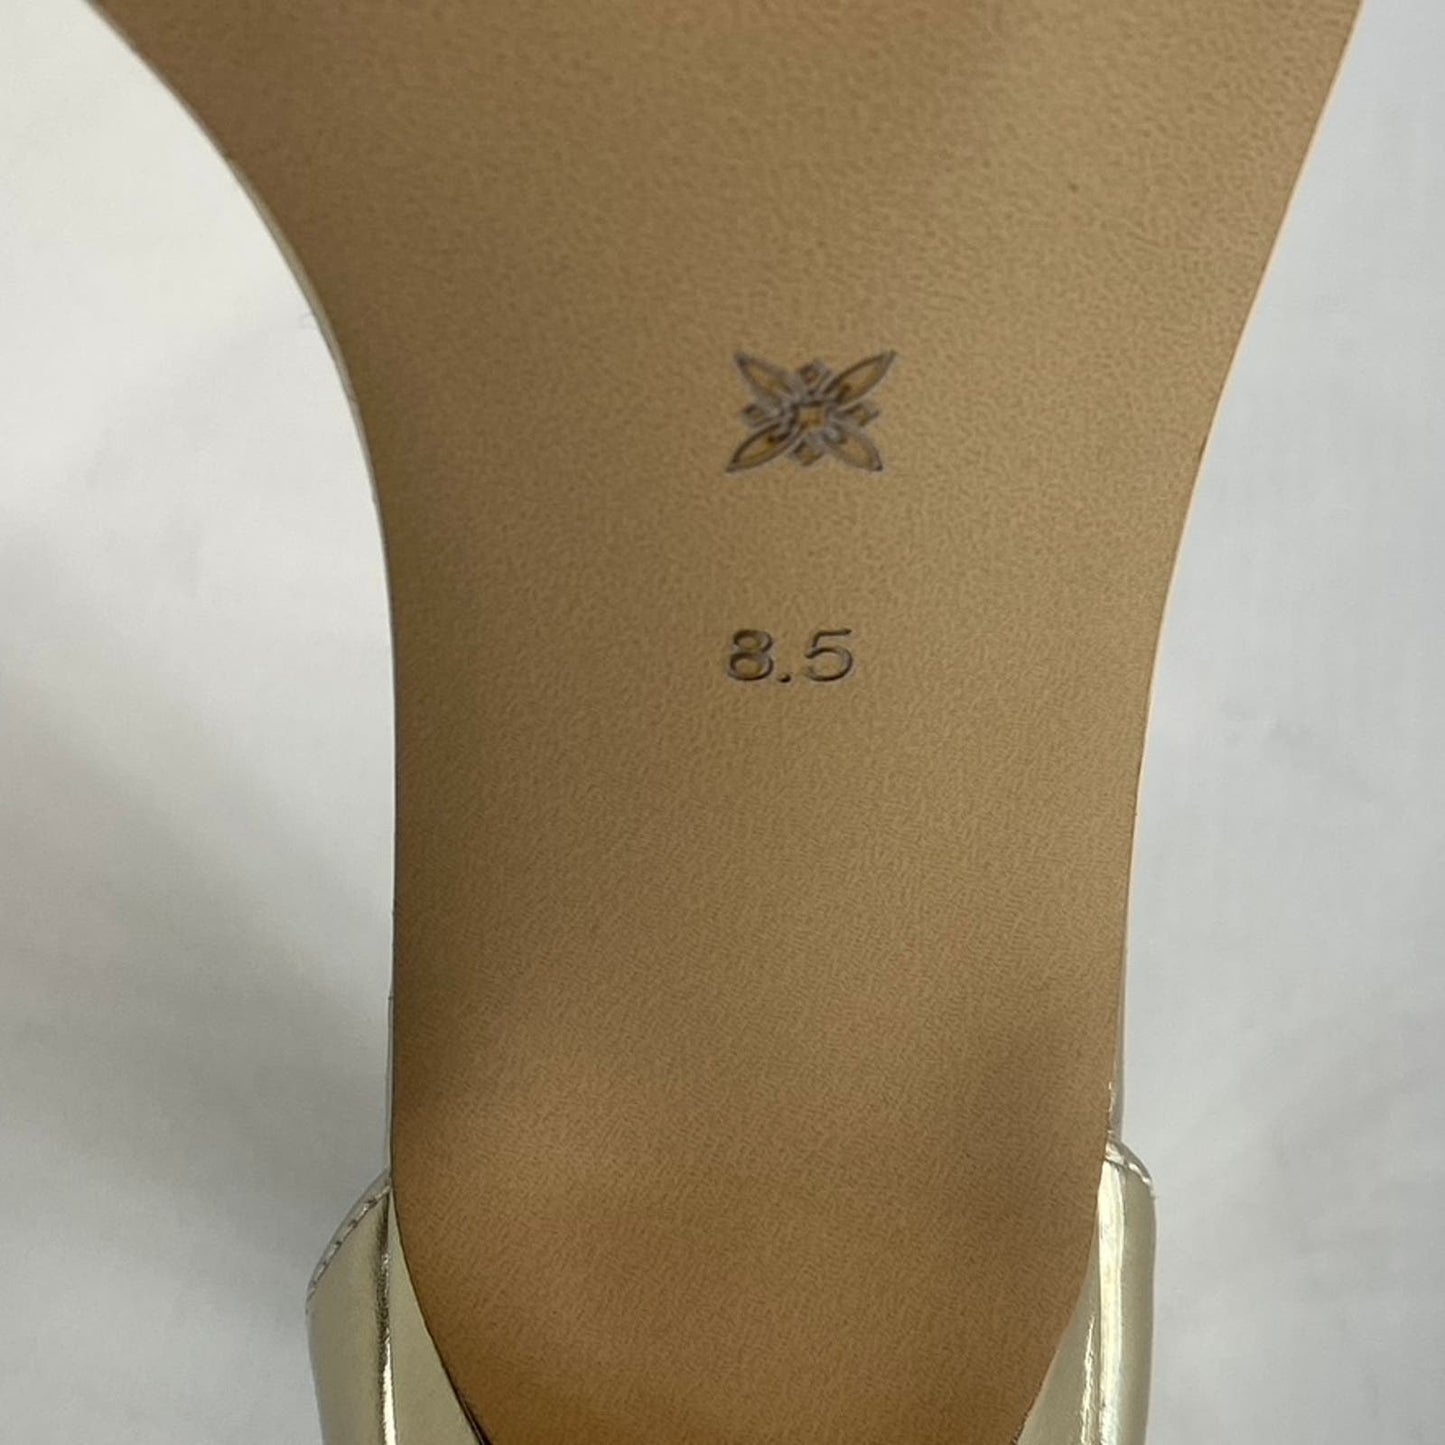 BCBGENERATION Women's Gold Metallic Isabel Braided Chain Heeled Sandals SZ 8.5